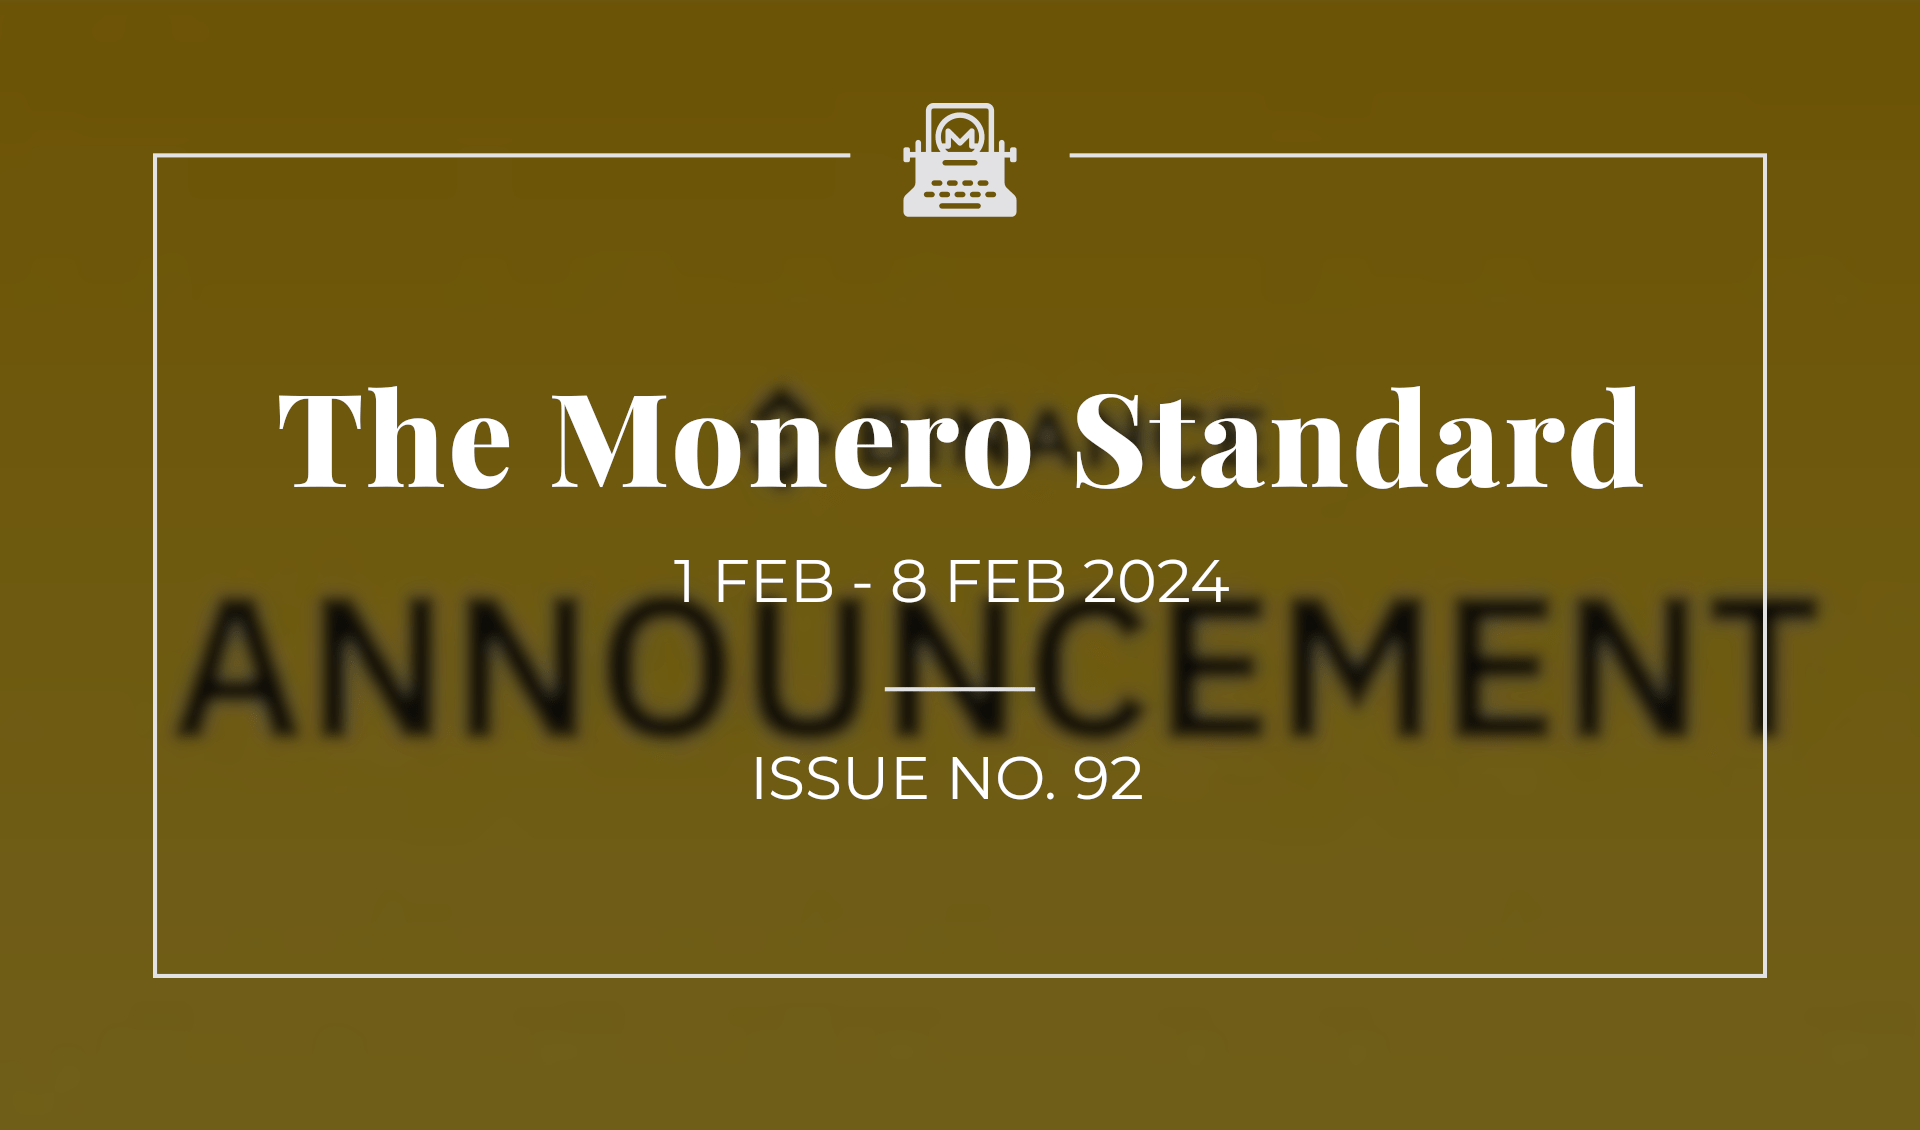 The Monero Standard #92: 1 Feb 2023 - 8 Feb 2024